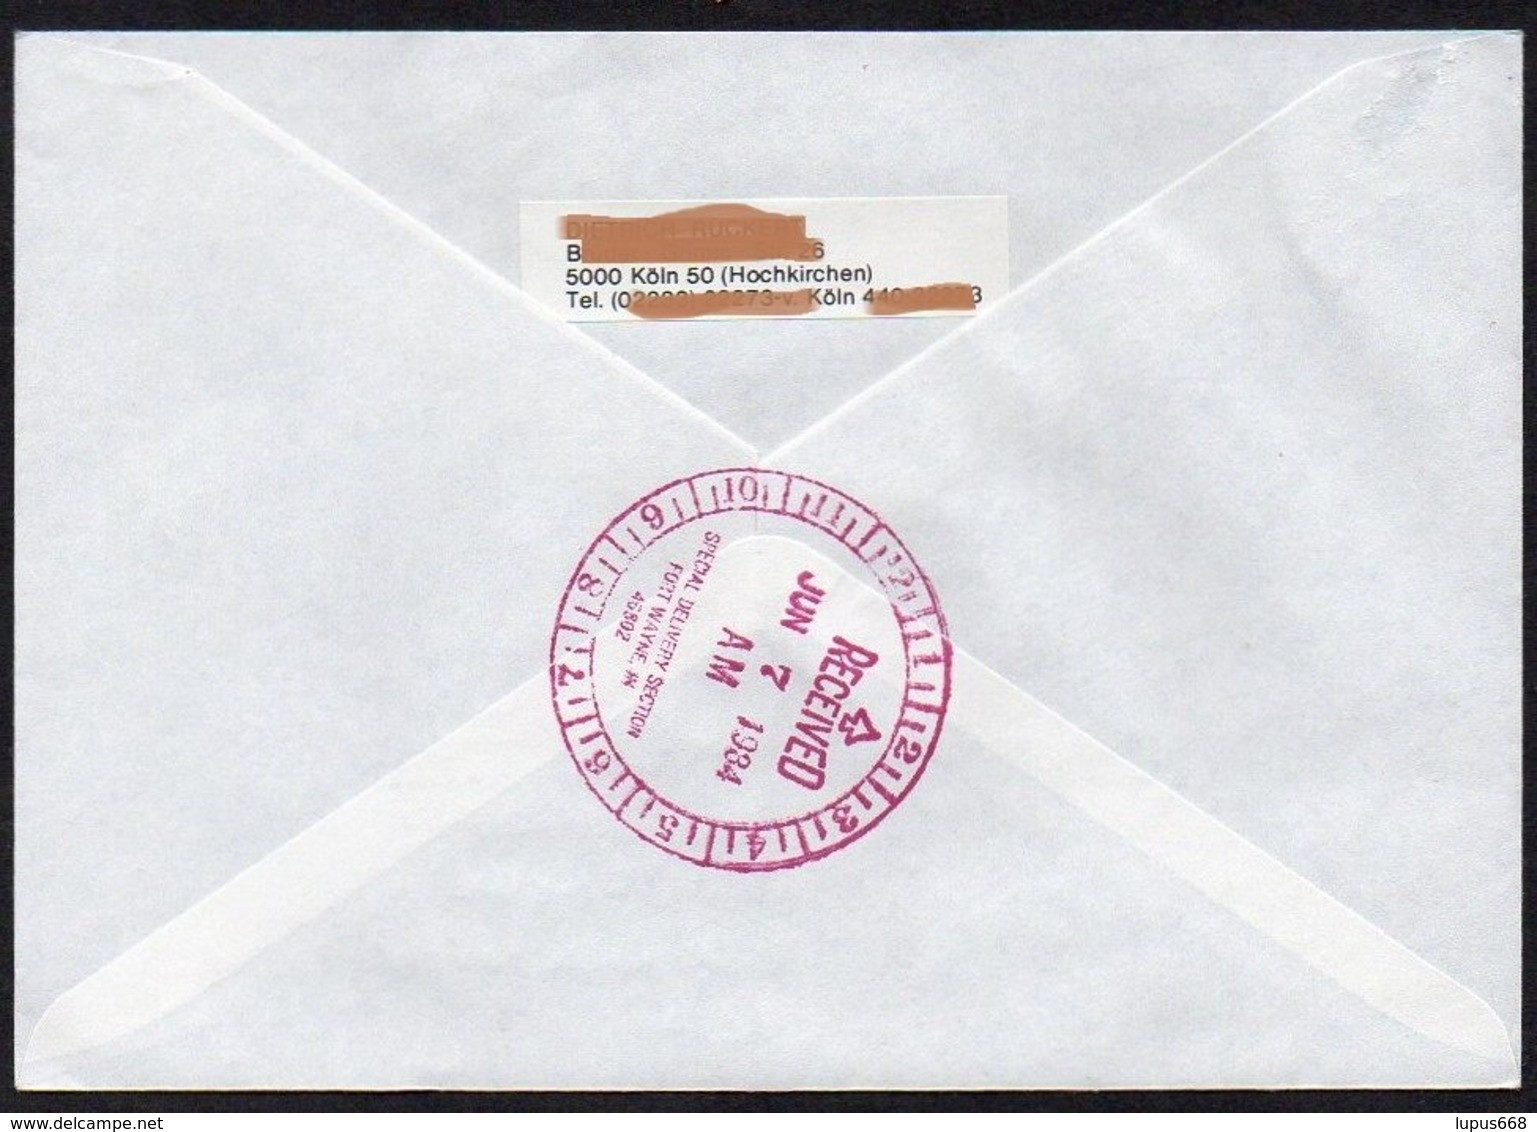 UNO - Wien  1984  MiNr. 44 (2)  Auf Express - Brief In Die U.S.A  ,  FDC; Eine Zukunft Für Flüchtlinge - Brieven En Documenten